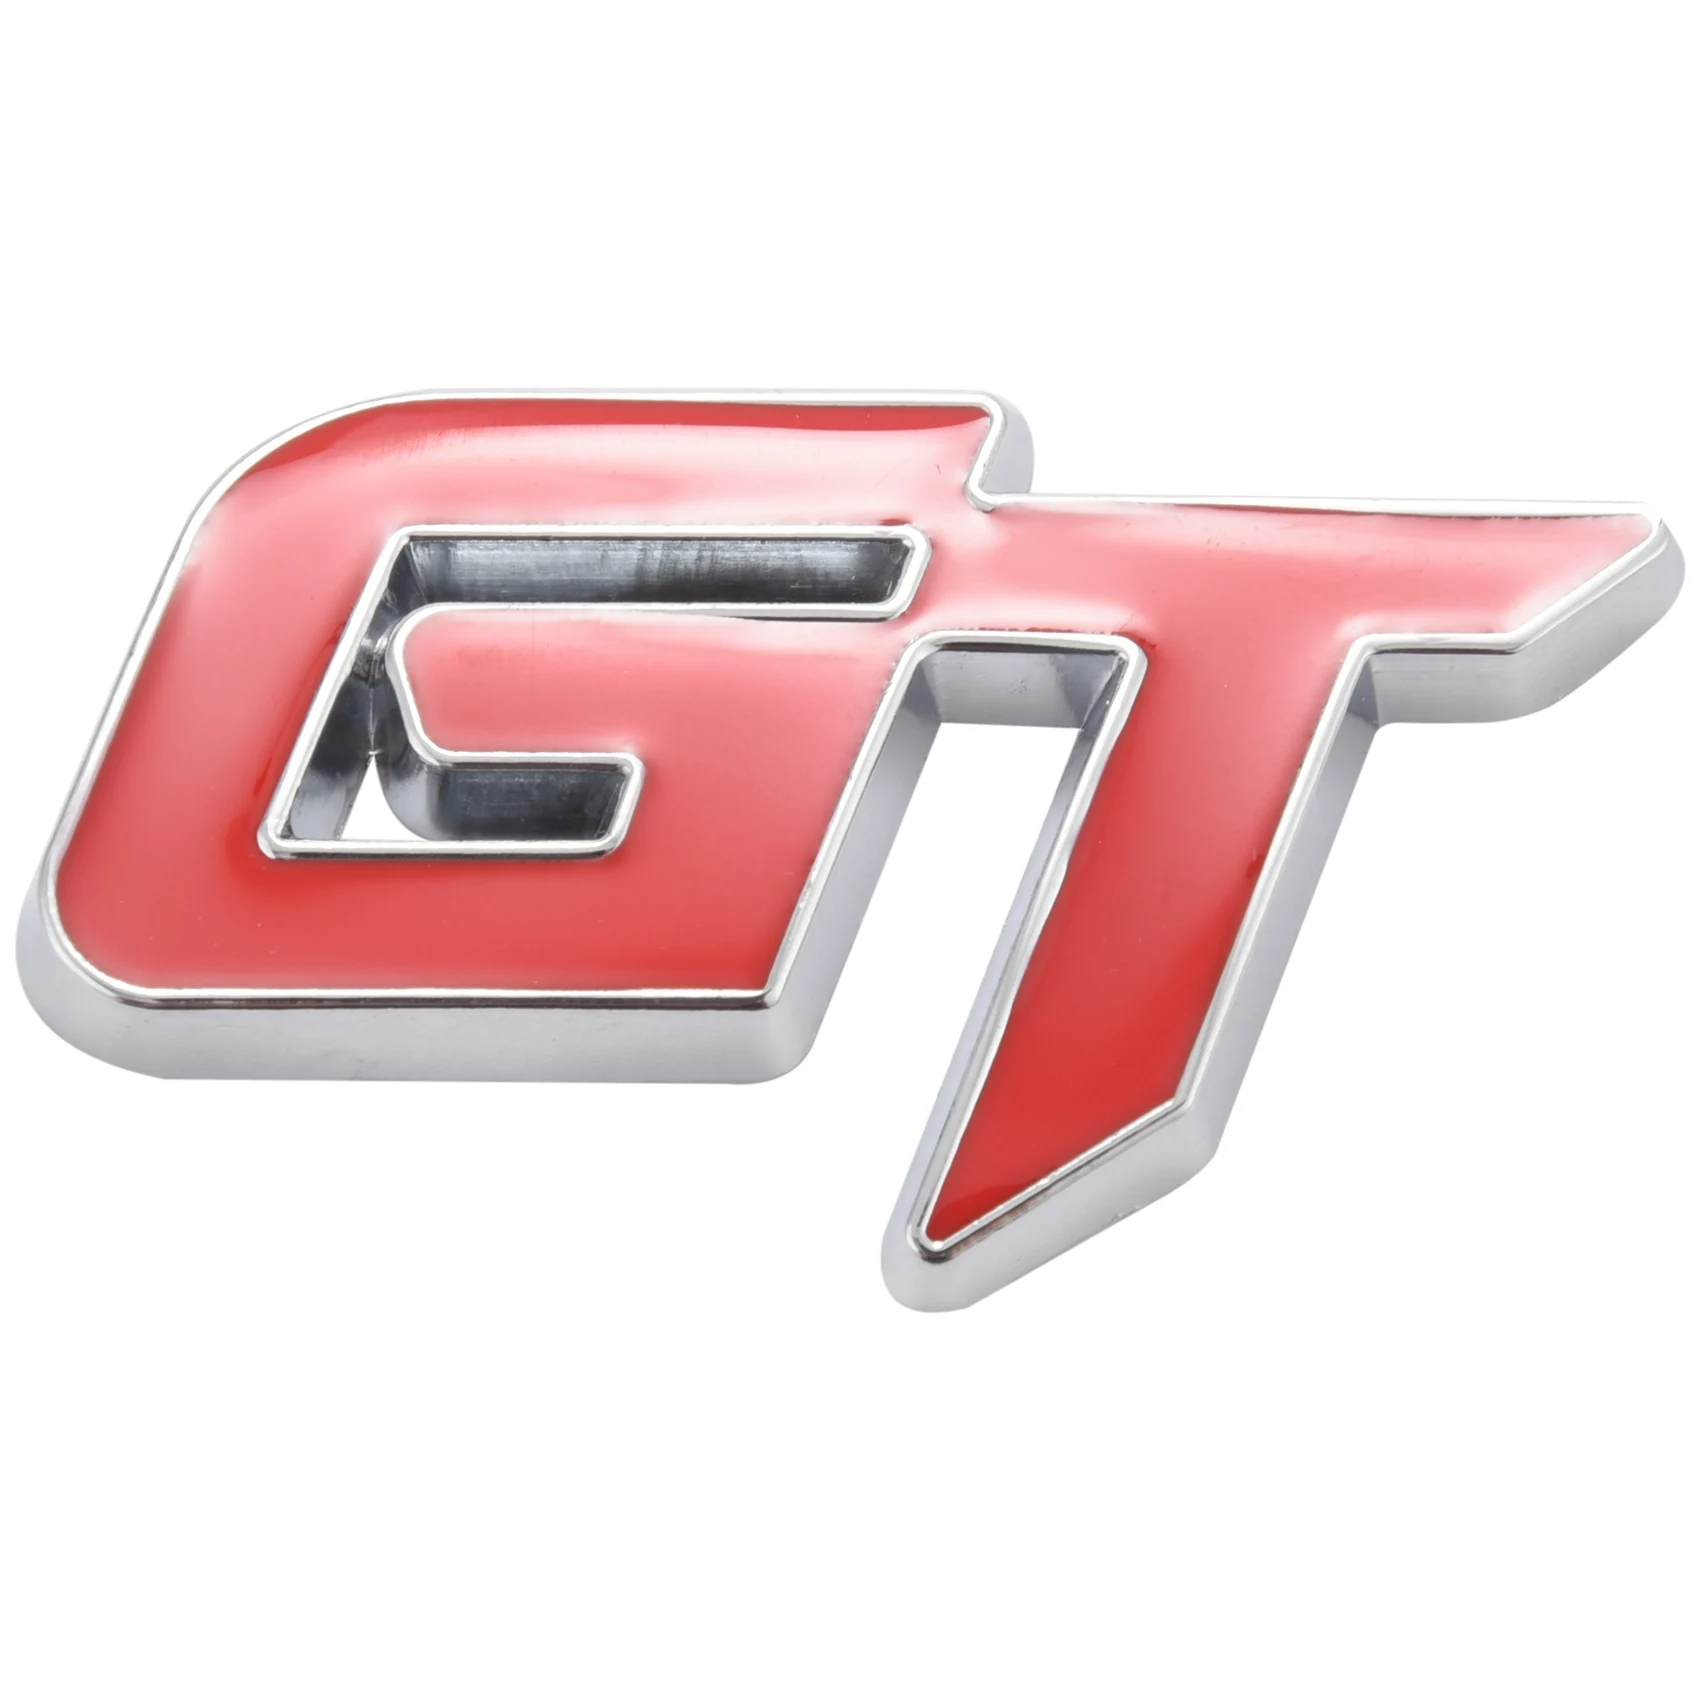 3d Gt Логотип Автомобиля Наклейка Модный Автомобильный Декор Наклейка Для Ford Mustang Focus 2 3 Fiesta Ranger Mondeo Mk2 Красный + Серебристый